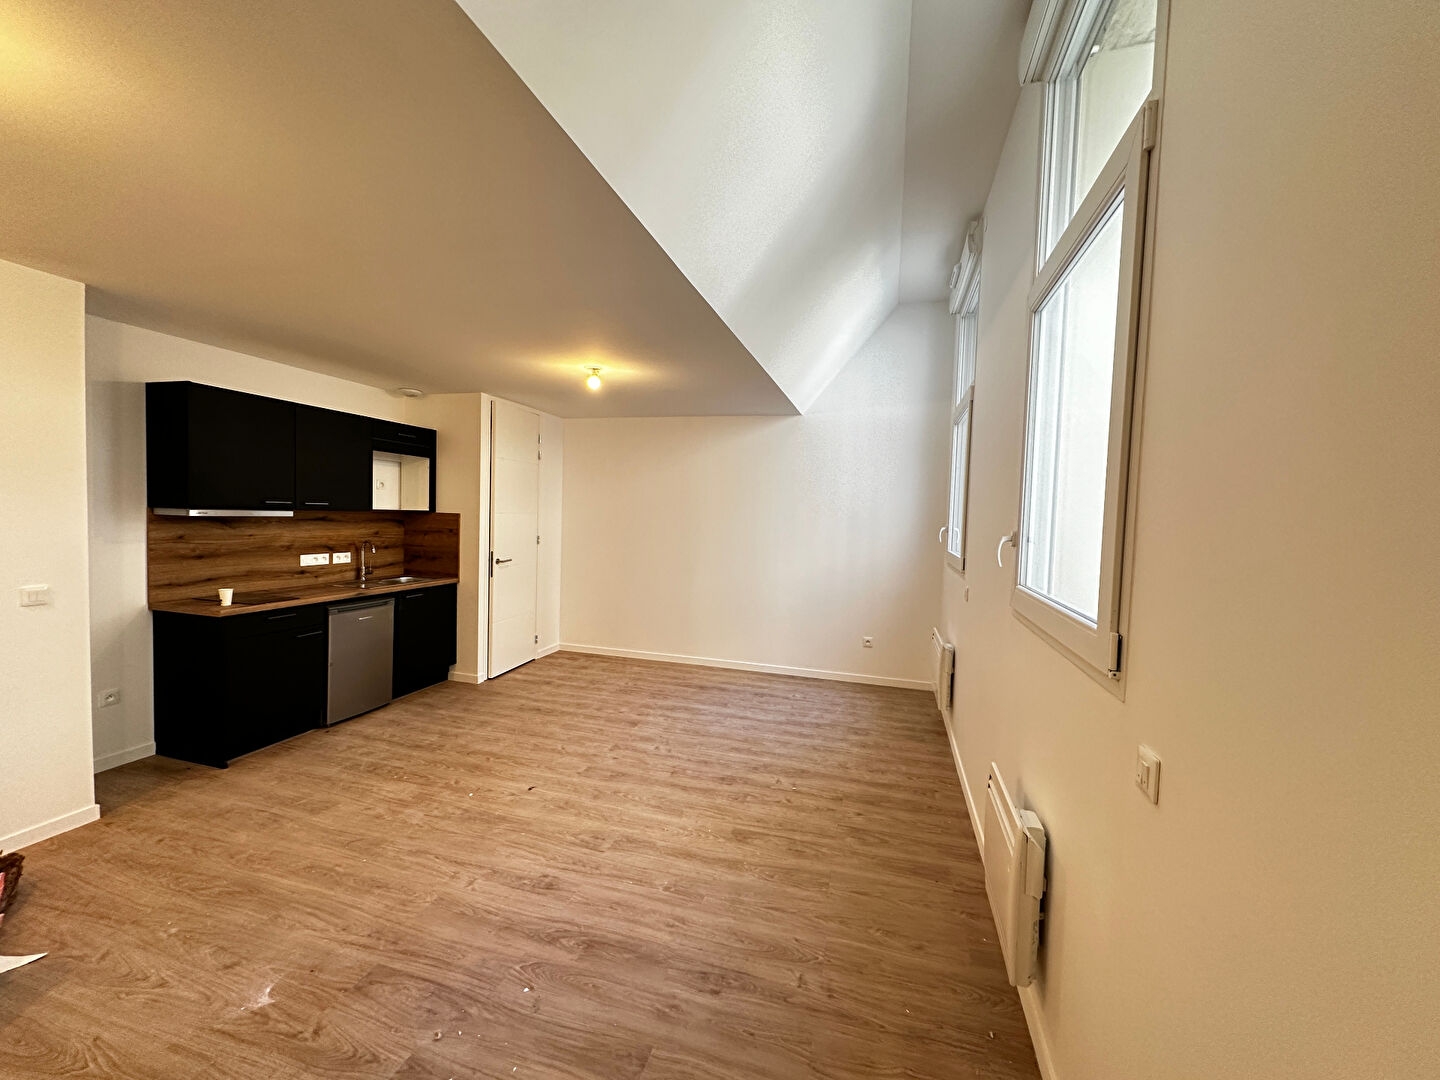 Appartement Reims 1 pièce(s) 33.40 m2 - 1